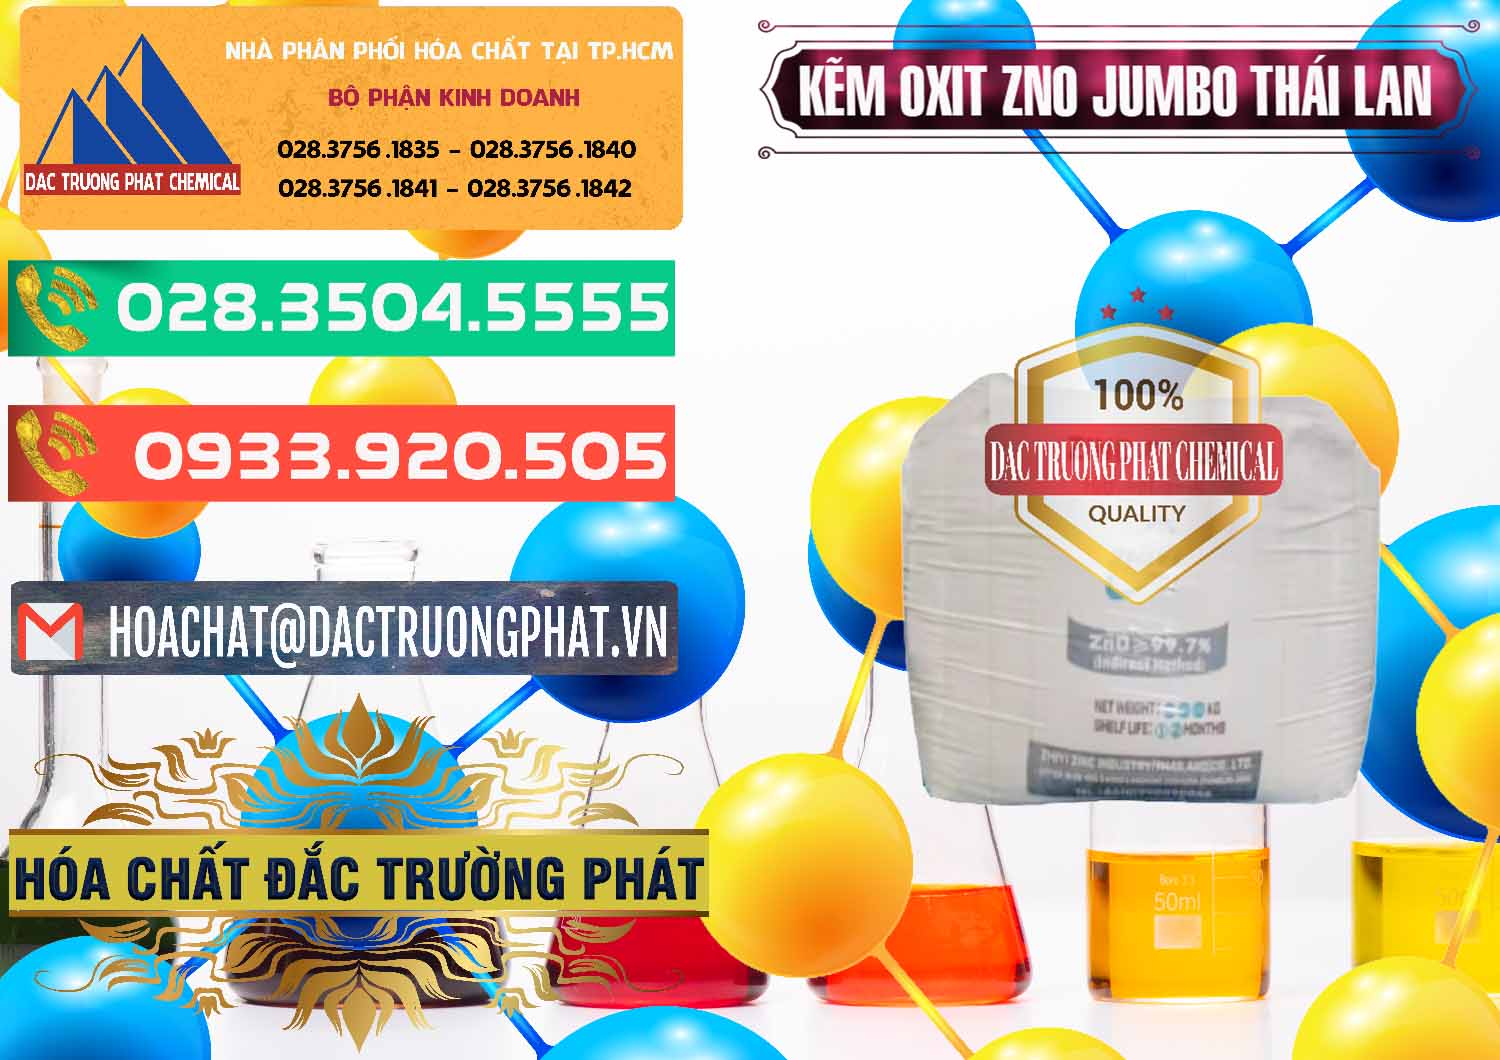 Chuyên bán & cung cấp Zinc Oxide - Bột Kẽm Oxit ZNO Jumbo Bành Thái Lan Thailand - 0370 - Nơi phân phối - cung cấp hóa chất tại TP.HCM - congtyhoachat.com.vn